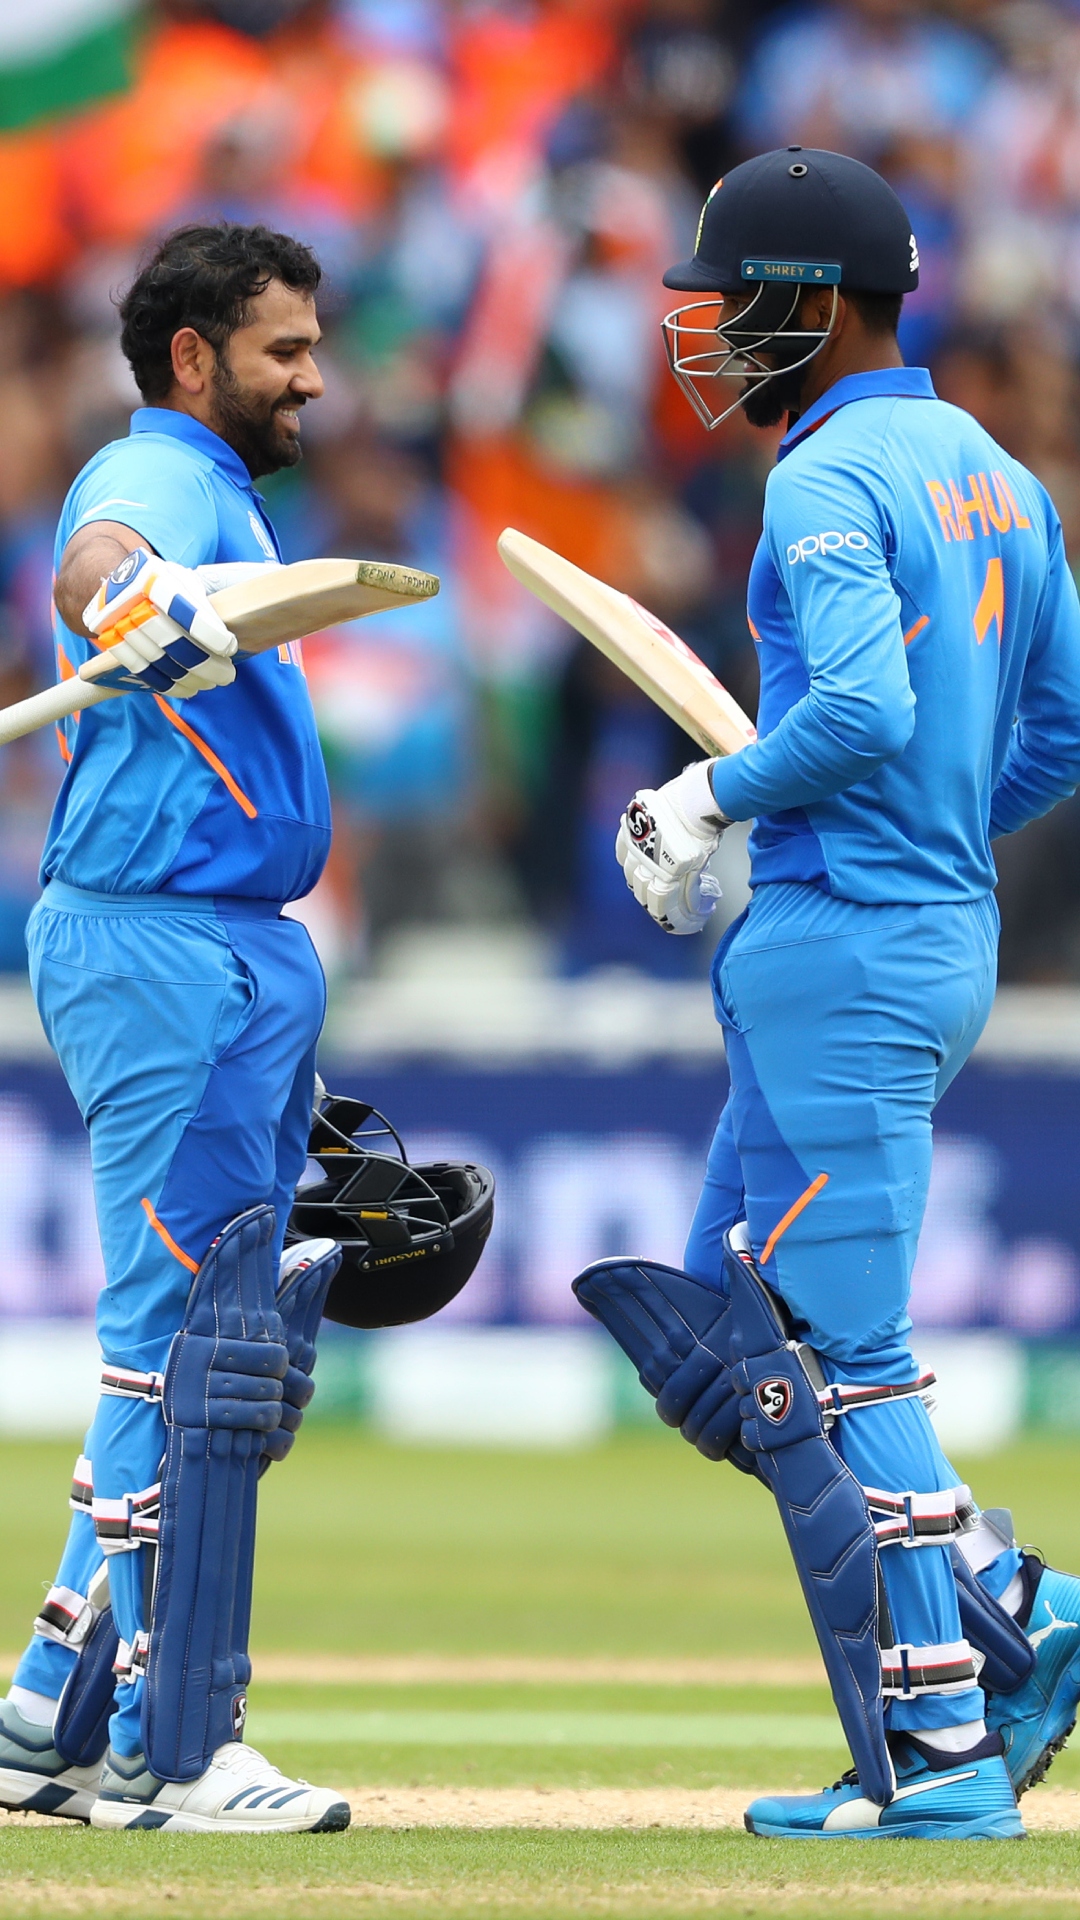 T20 वर्ल्ड कप के एक मैच में अर्धशतक लगाने वाले दोनों भारतीय ओपनर्स, लिस्ट में बड़े-बड़े नाम